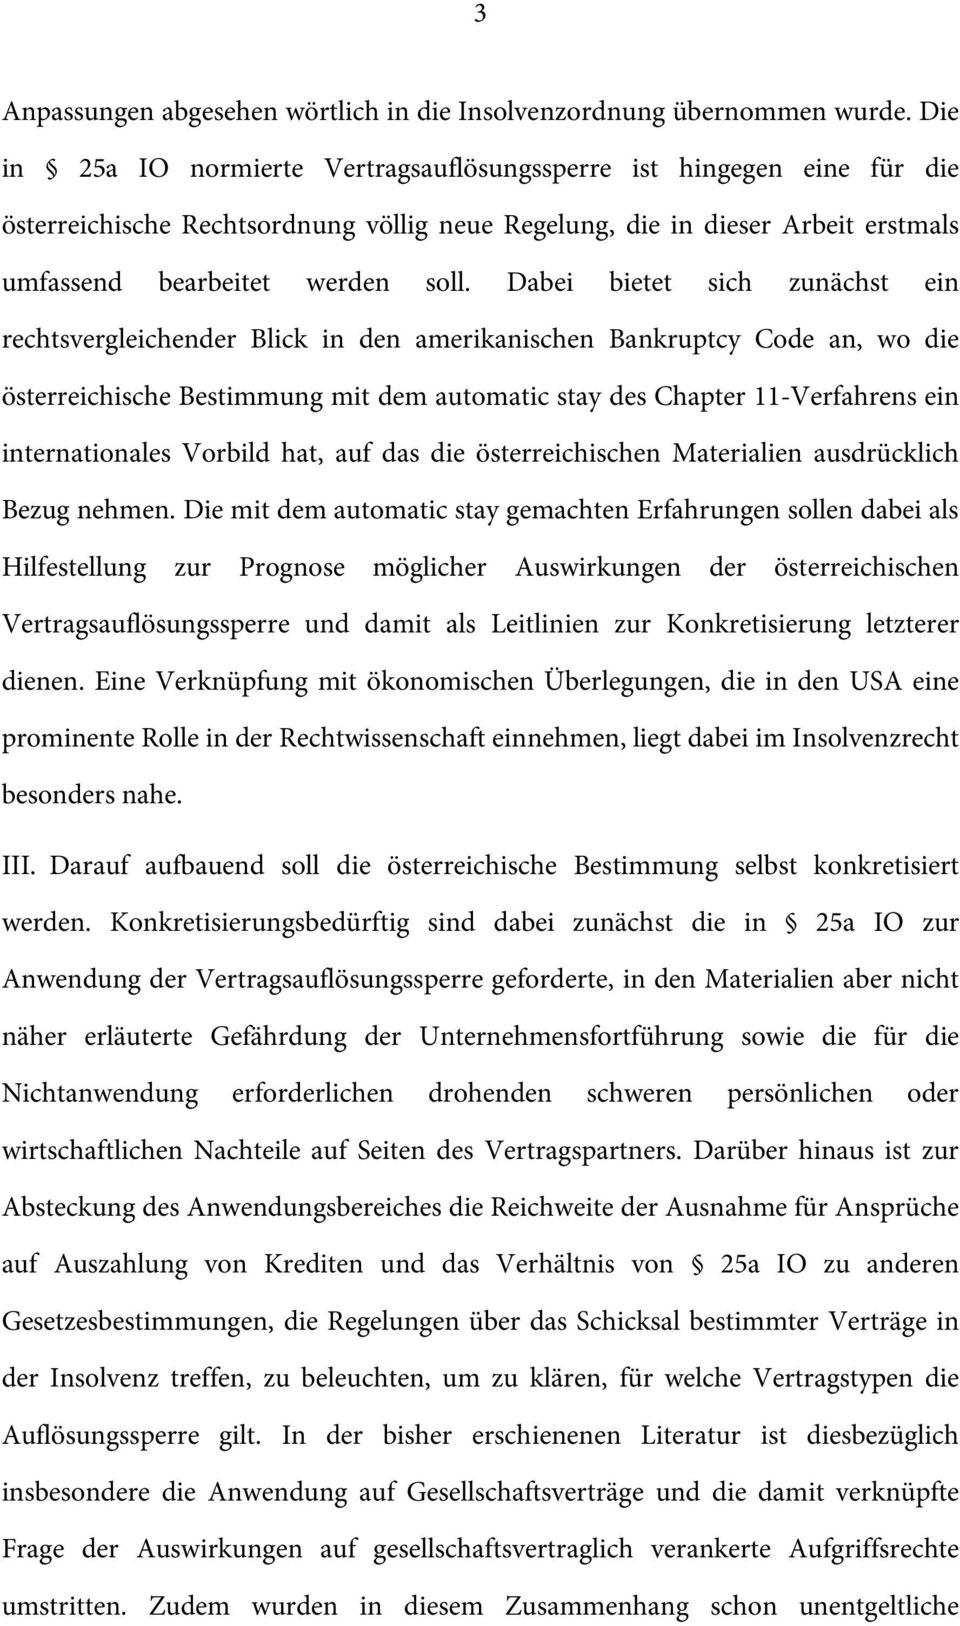 Dabei bietet sich zunächst ein rechtsvergleichender Blick in den amerikanischen Bankruptcy Code an, wo die österreichische Bestimmung mit dem automatic stay des Chapter 11-Verfahrens ein